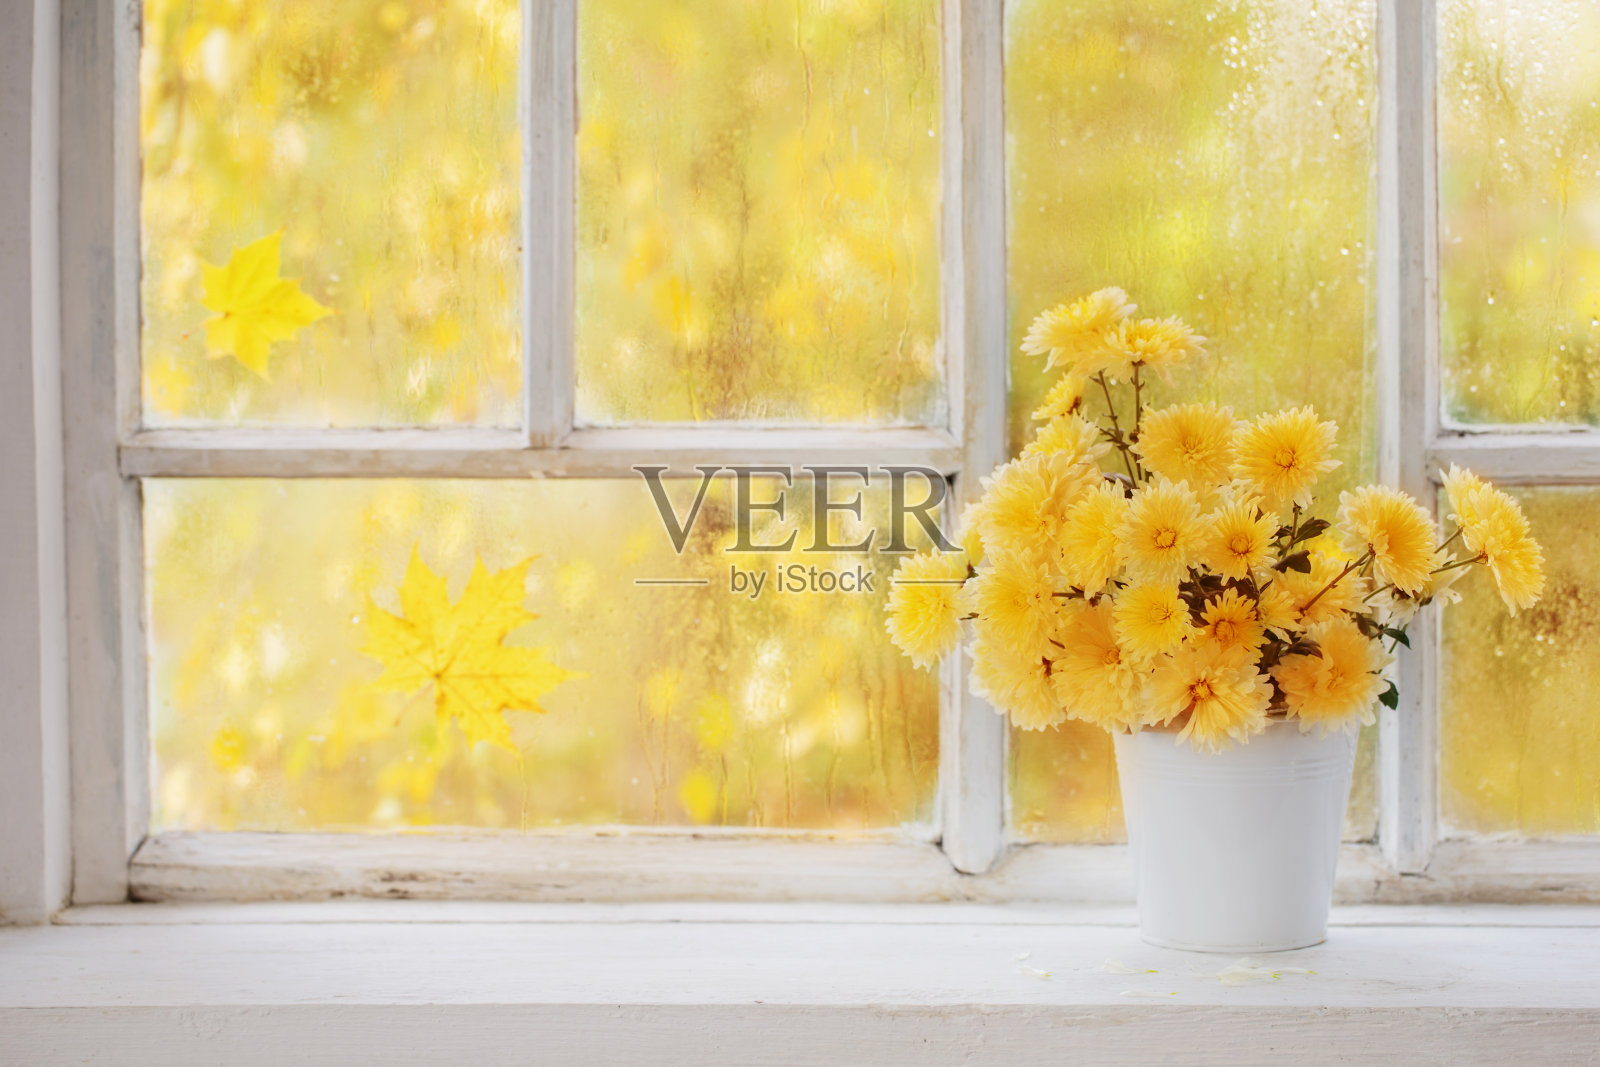 秋日窗台花瓶里的菊花照片摄影图片